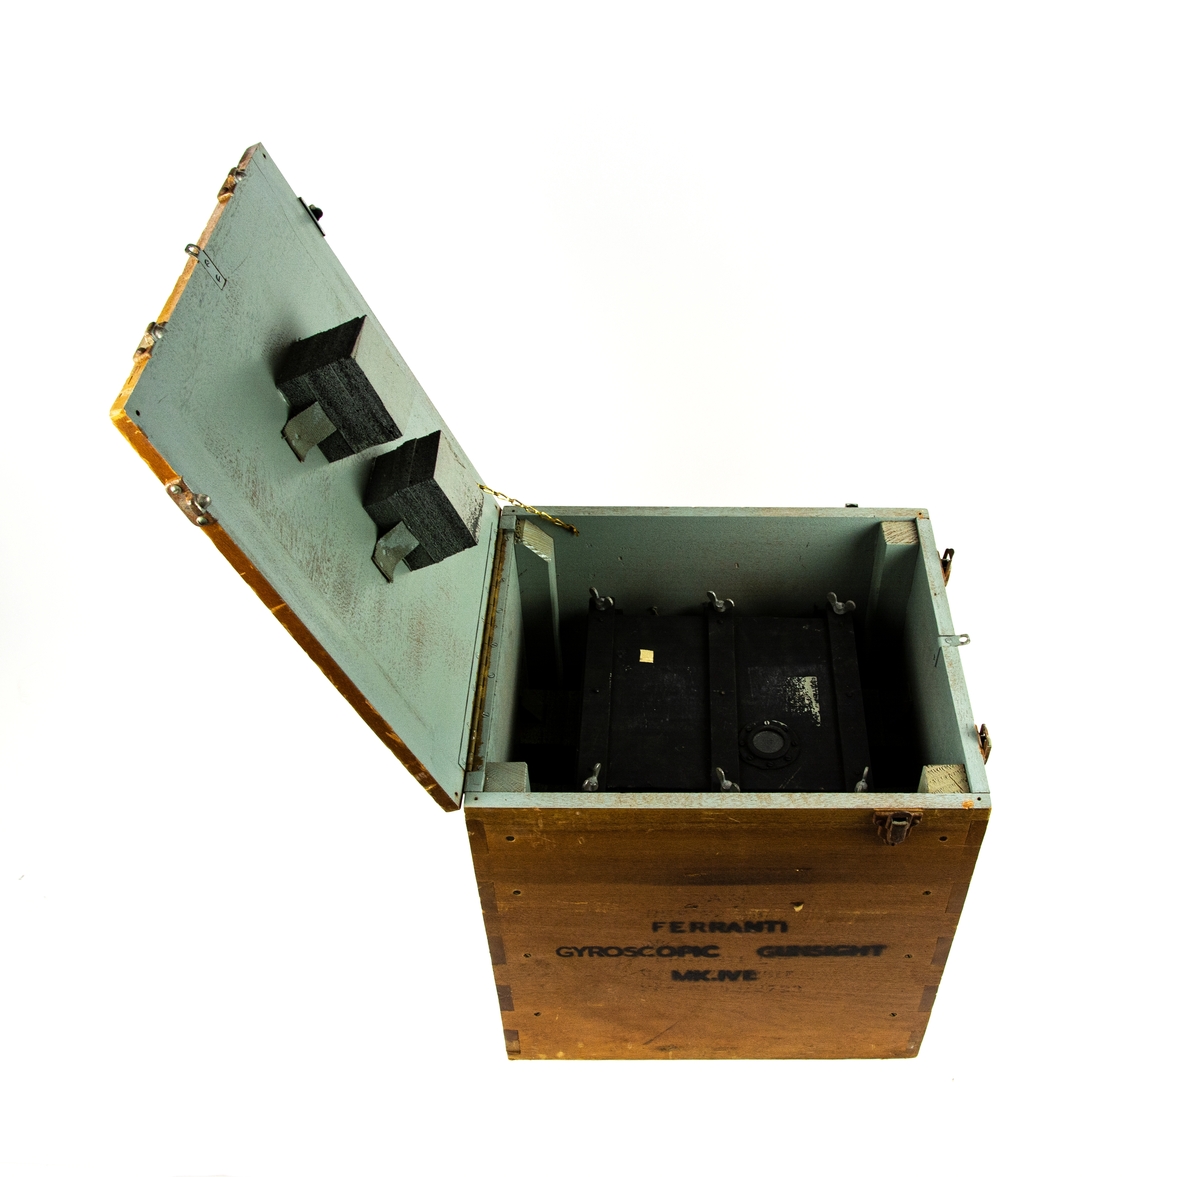 Tom förvaringslåda för Gyro Gunsight MK IVE, tillverkad av Ferranti. Lådan är tillverkad i betsat trä med metall beslag, innerlåda av plåt för Gyrosikte.